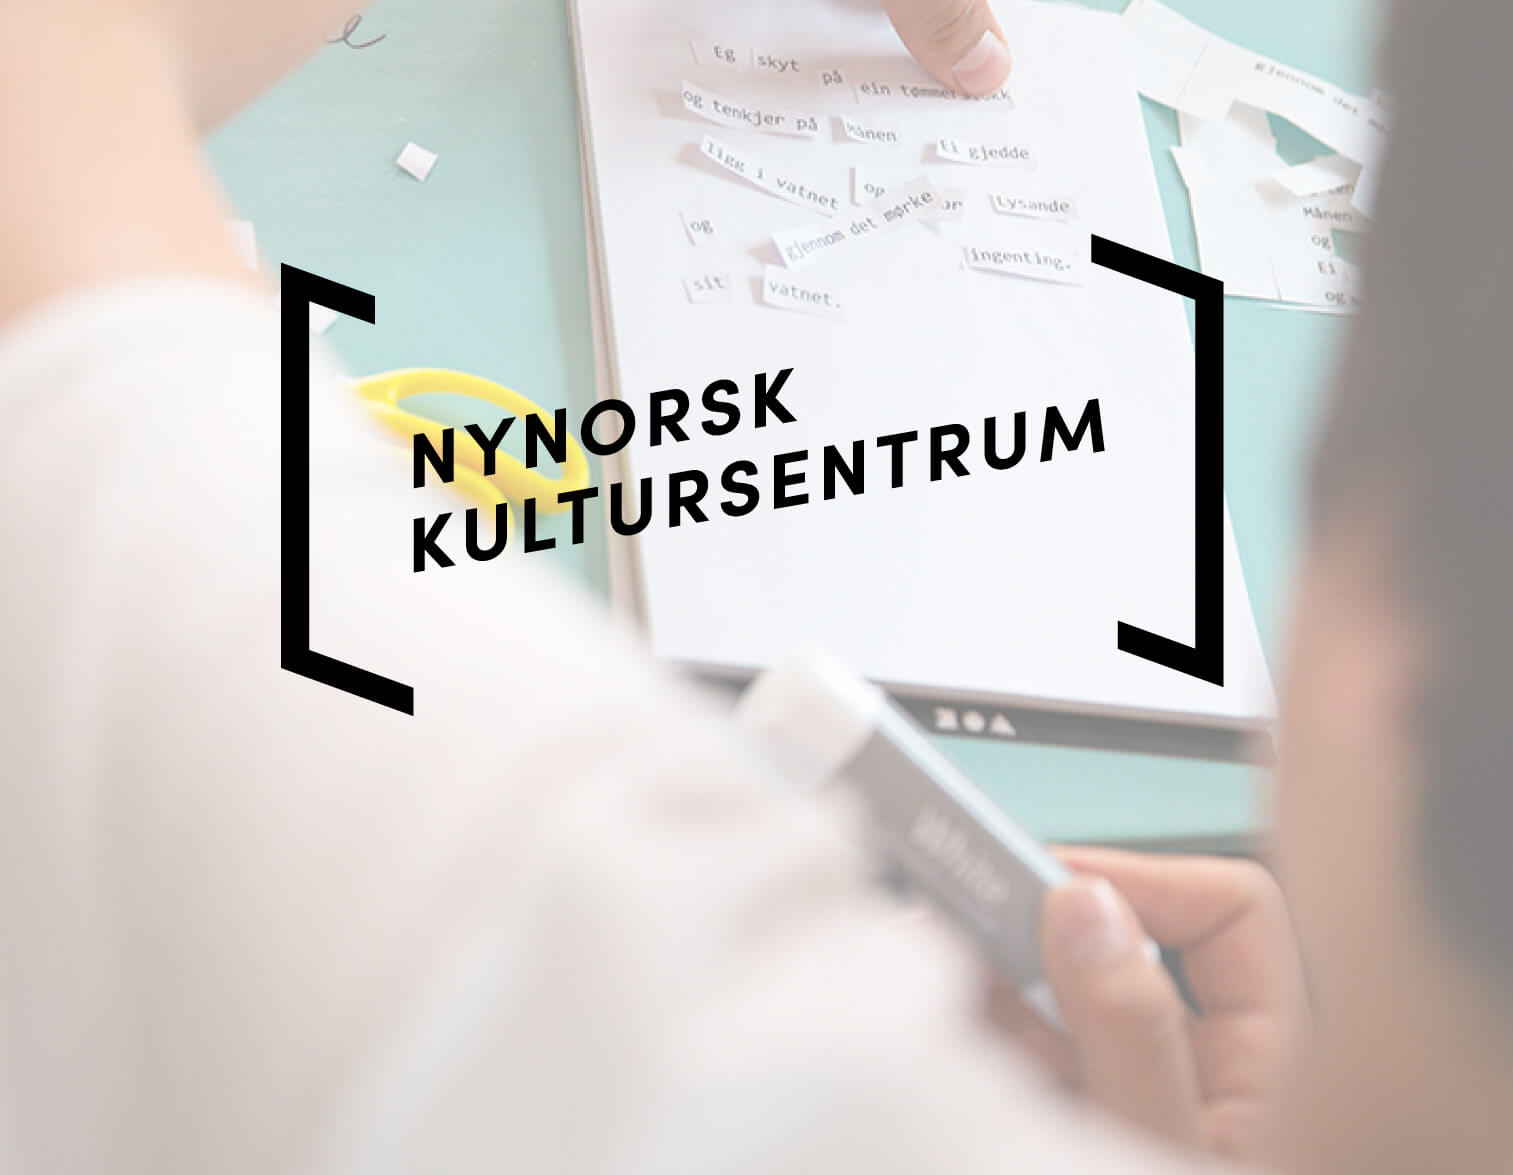 Bilete av den nye logoen til Nynorsk kultursentrum